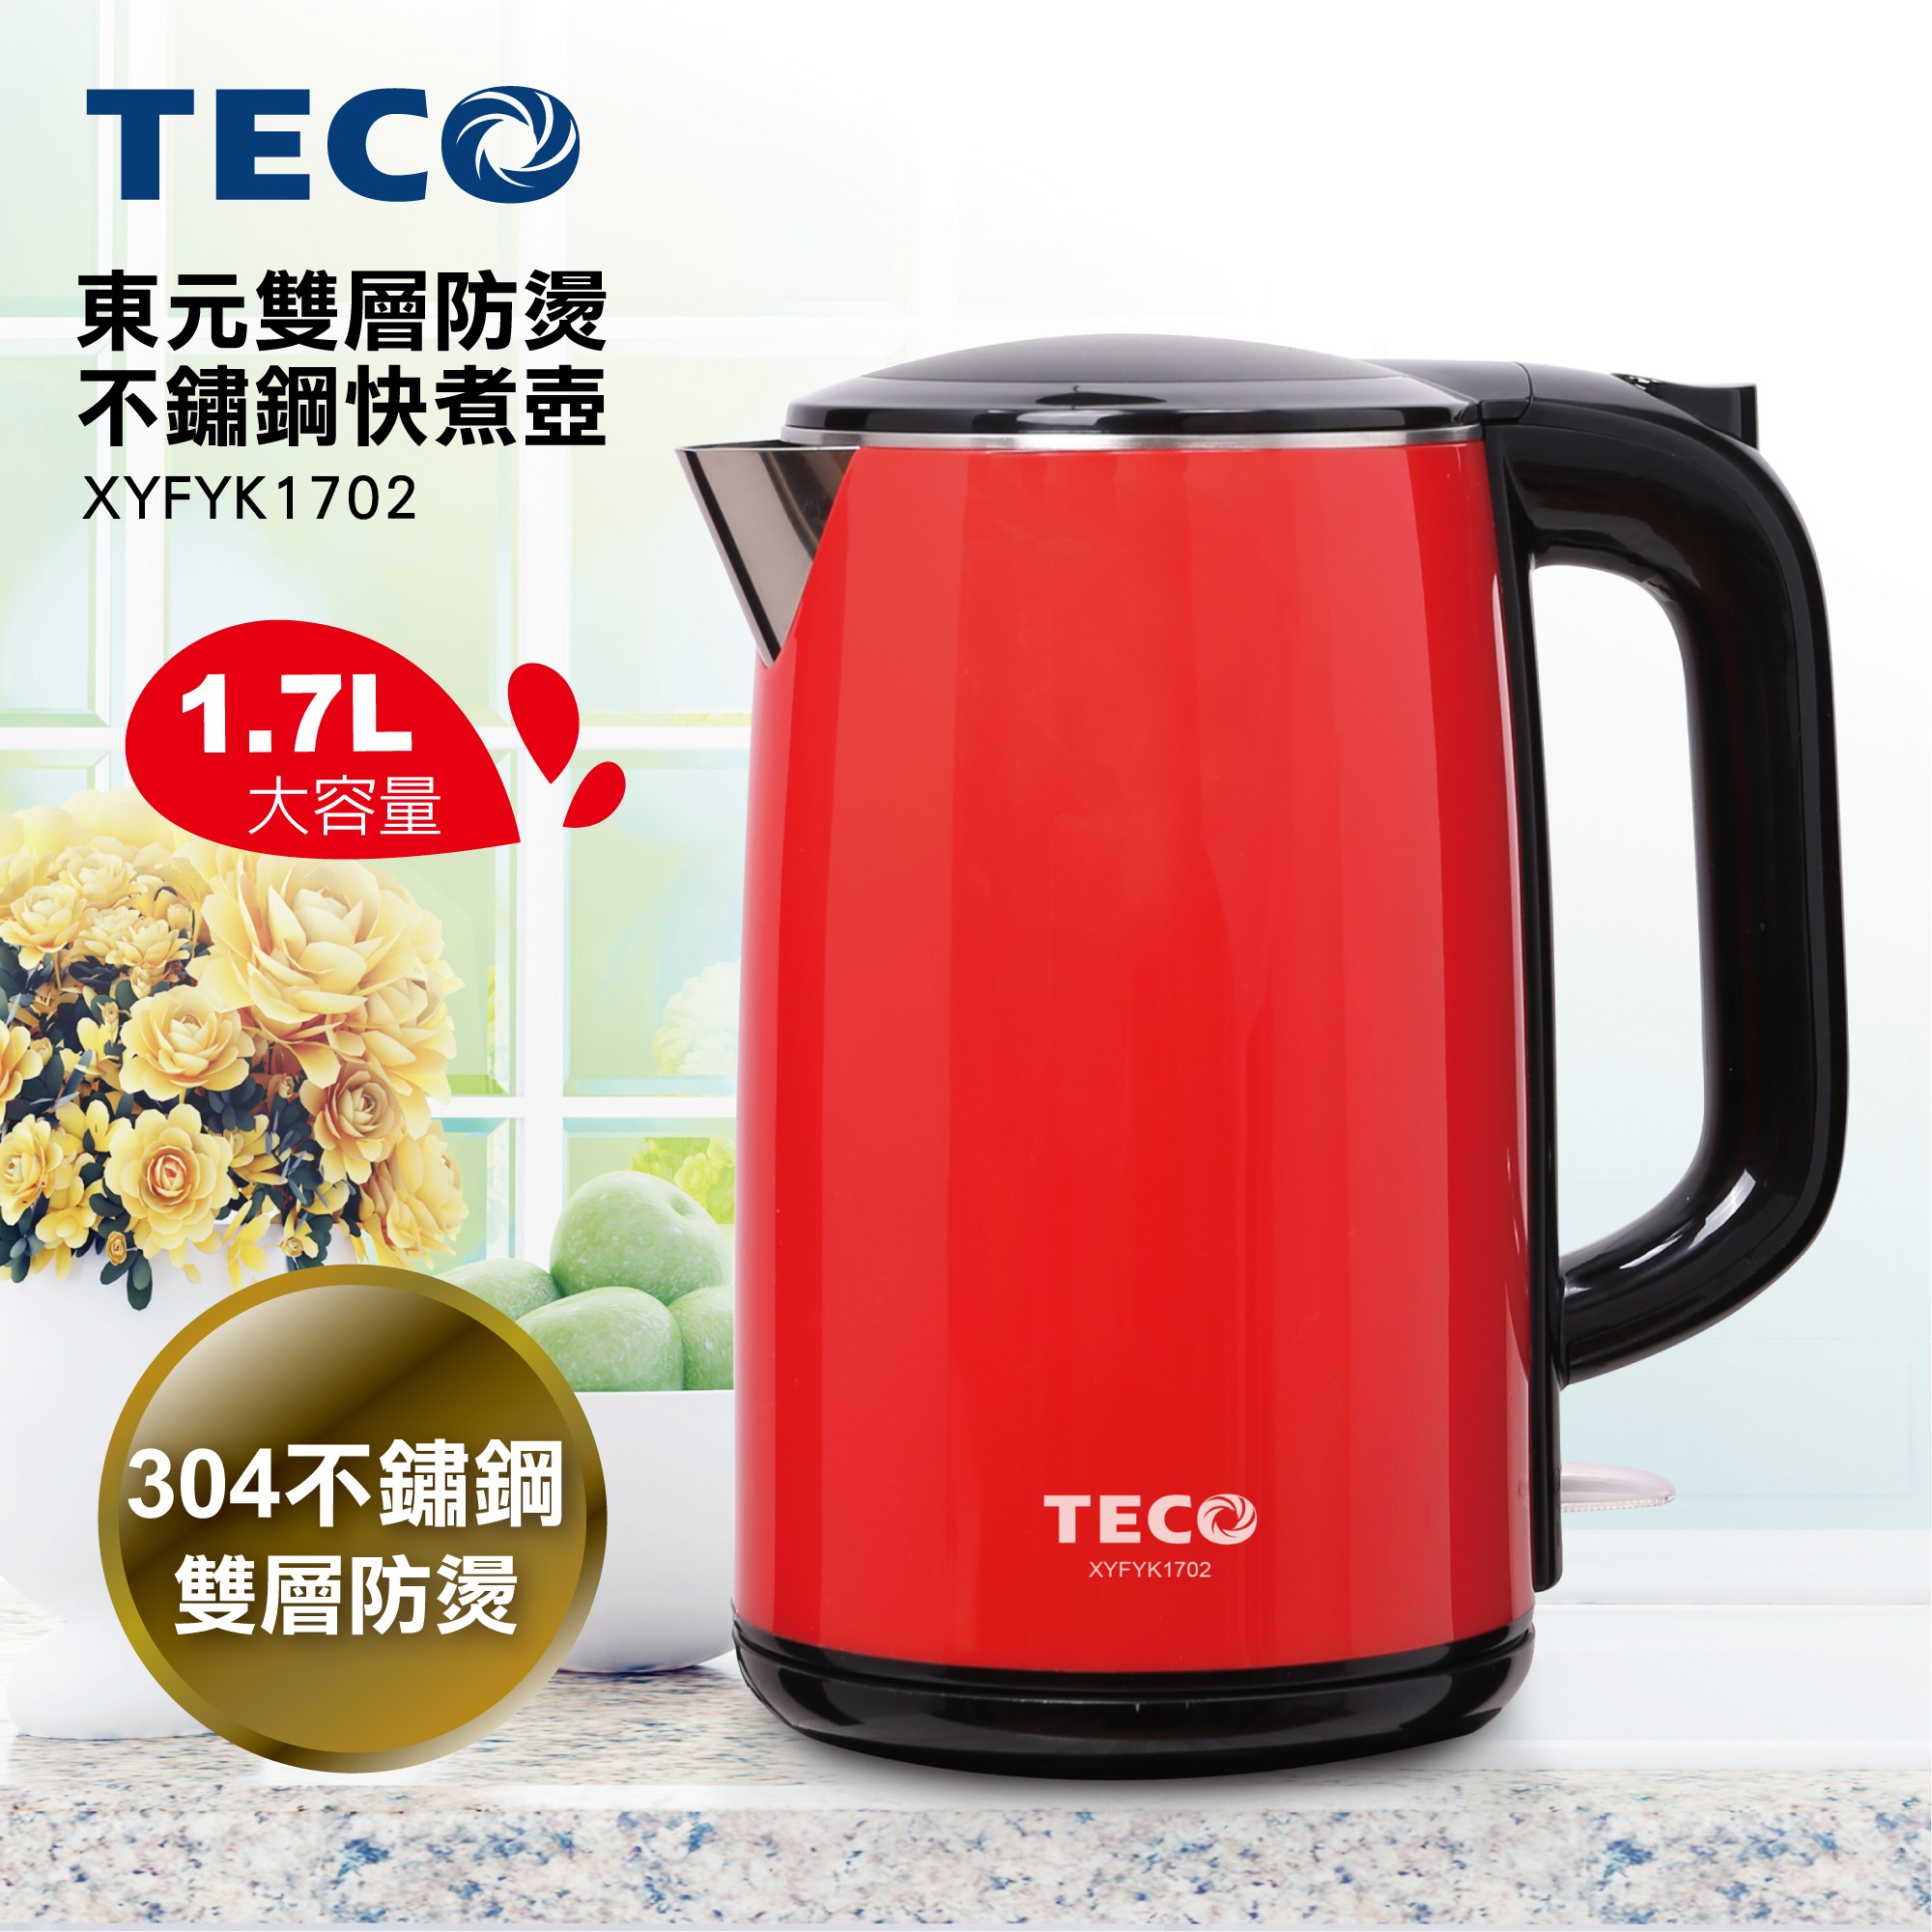 TECO東元 1.7L雙層防燙不鏽鋼快煮壺 XYFYK1702